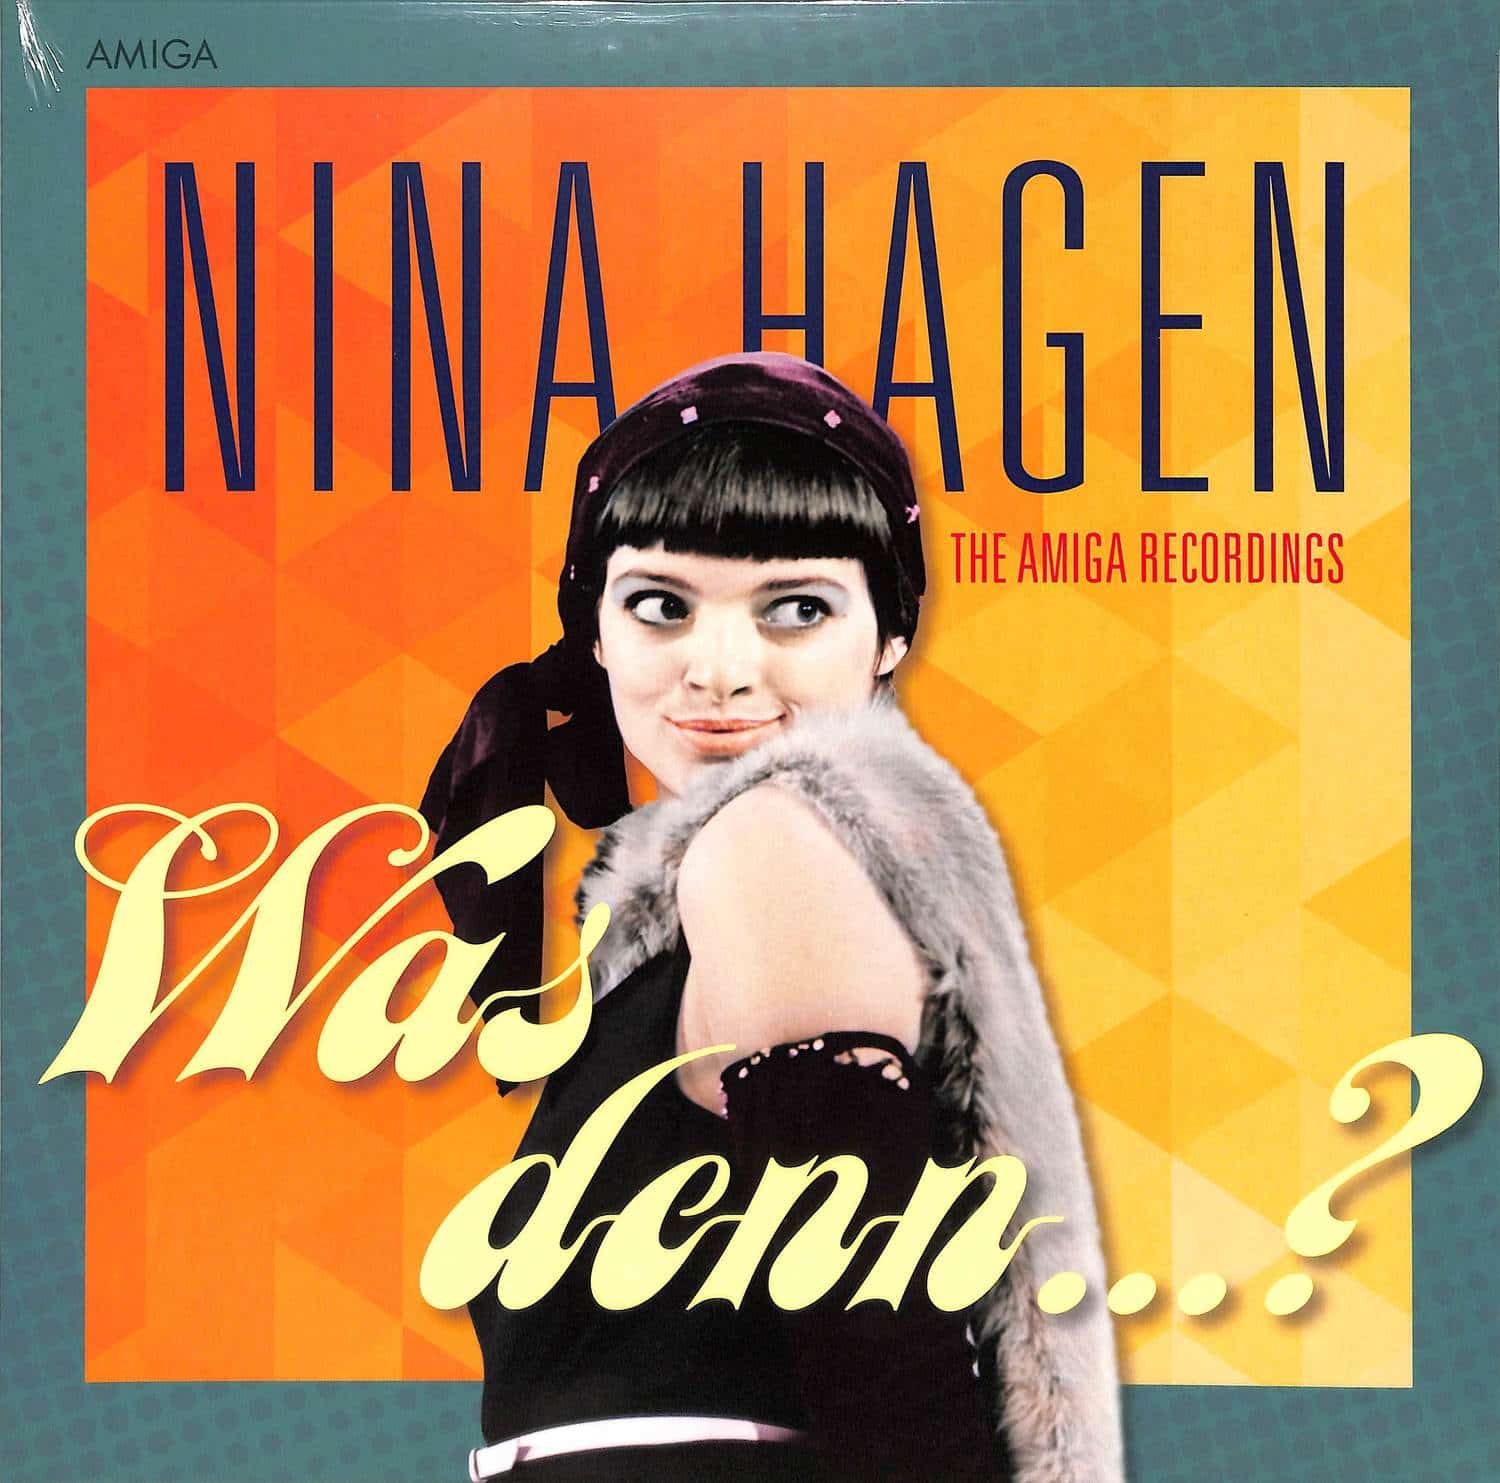 Nina Hagen - WAS DENN? 